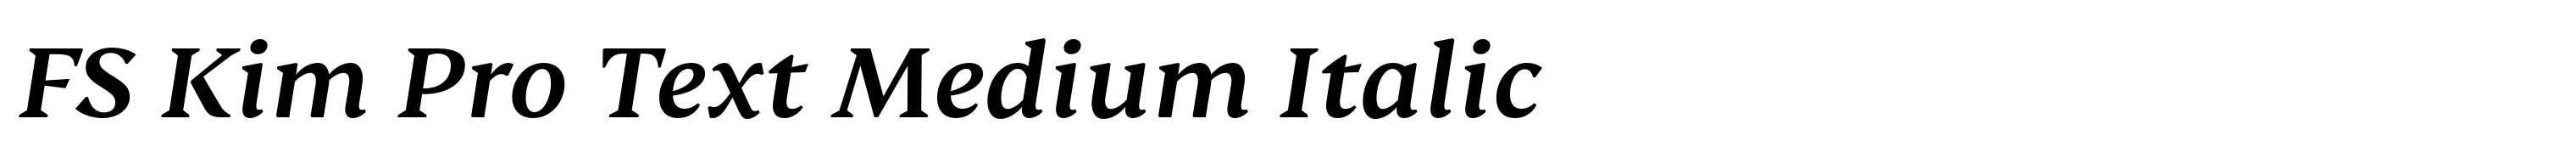 FS Kim Pro Text Medium Italic